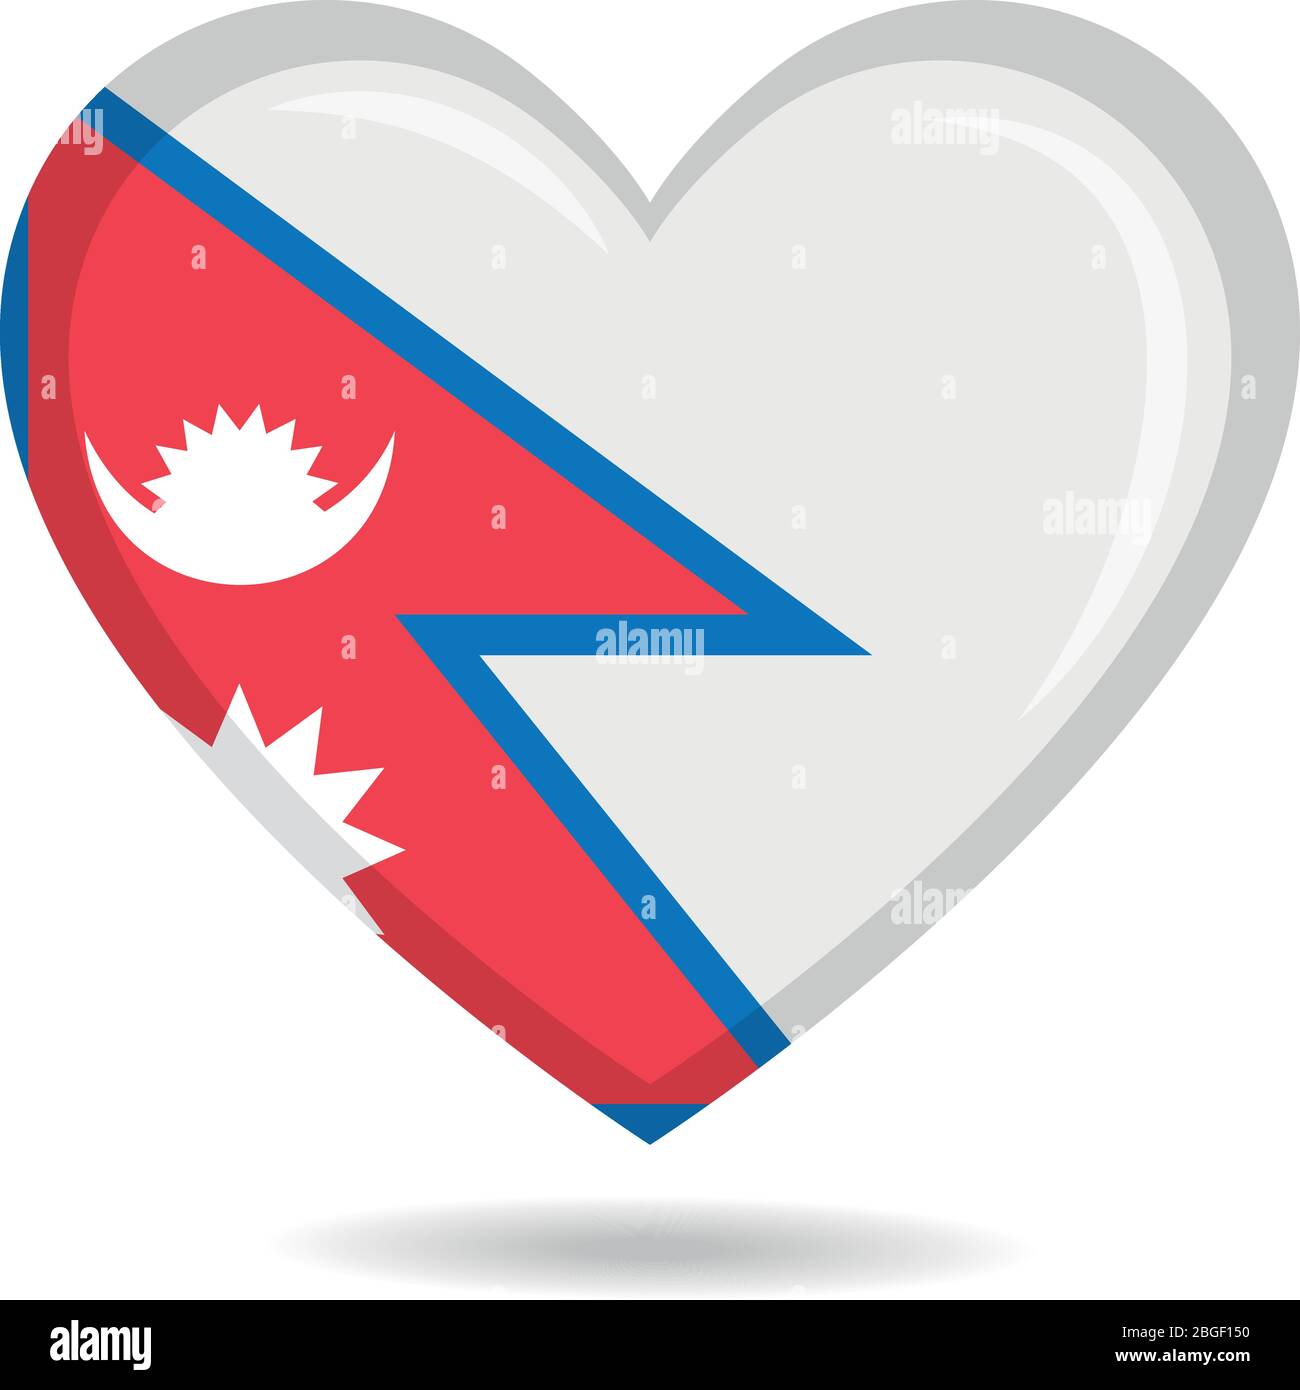 Nepal national flag in heart shape vector illustration Stock Vector